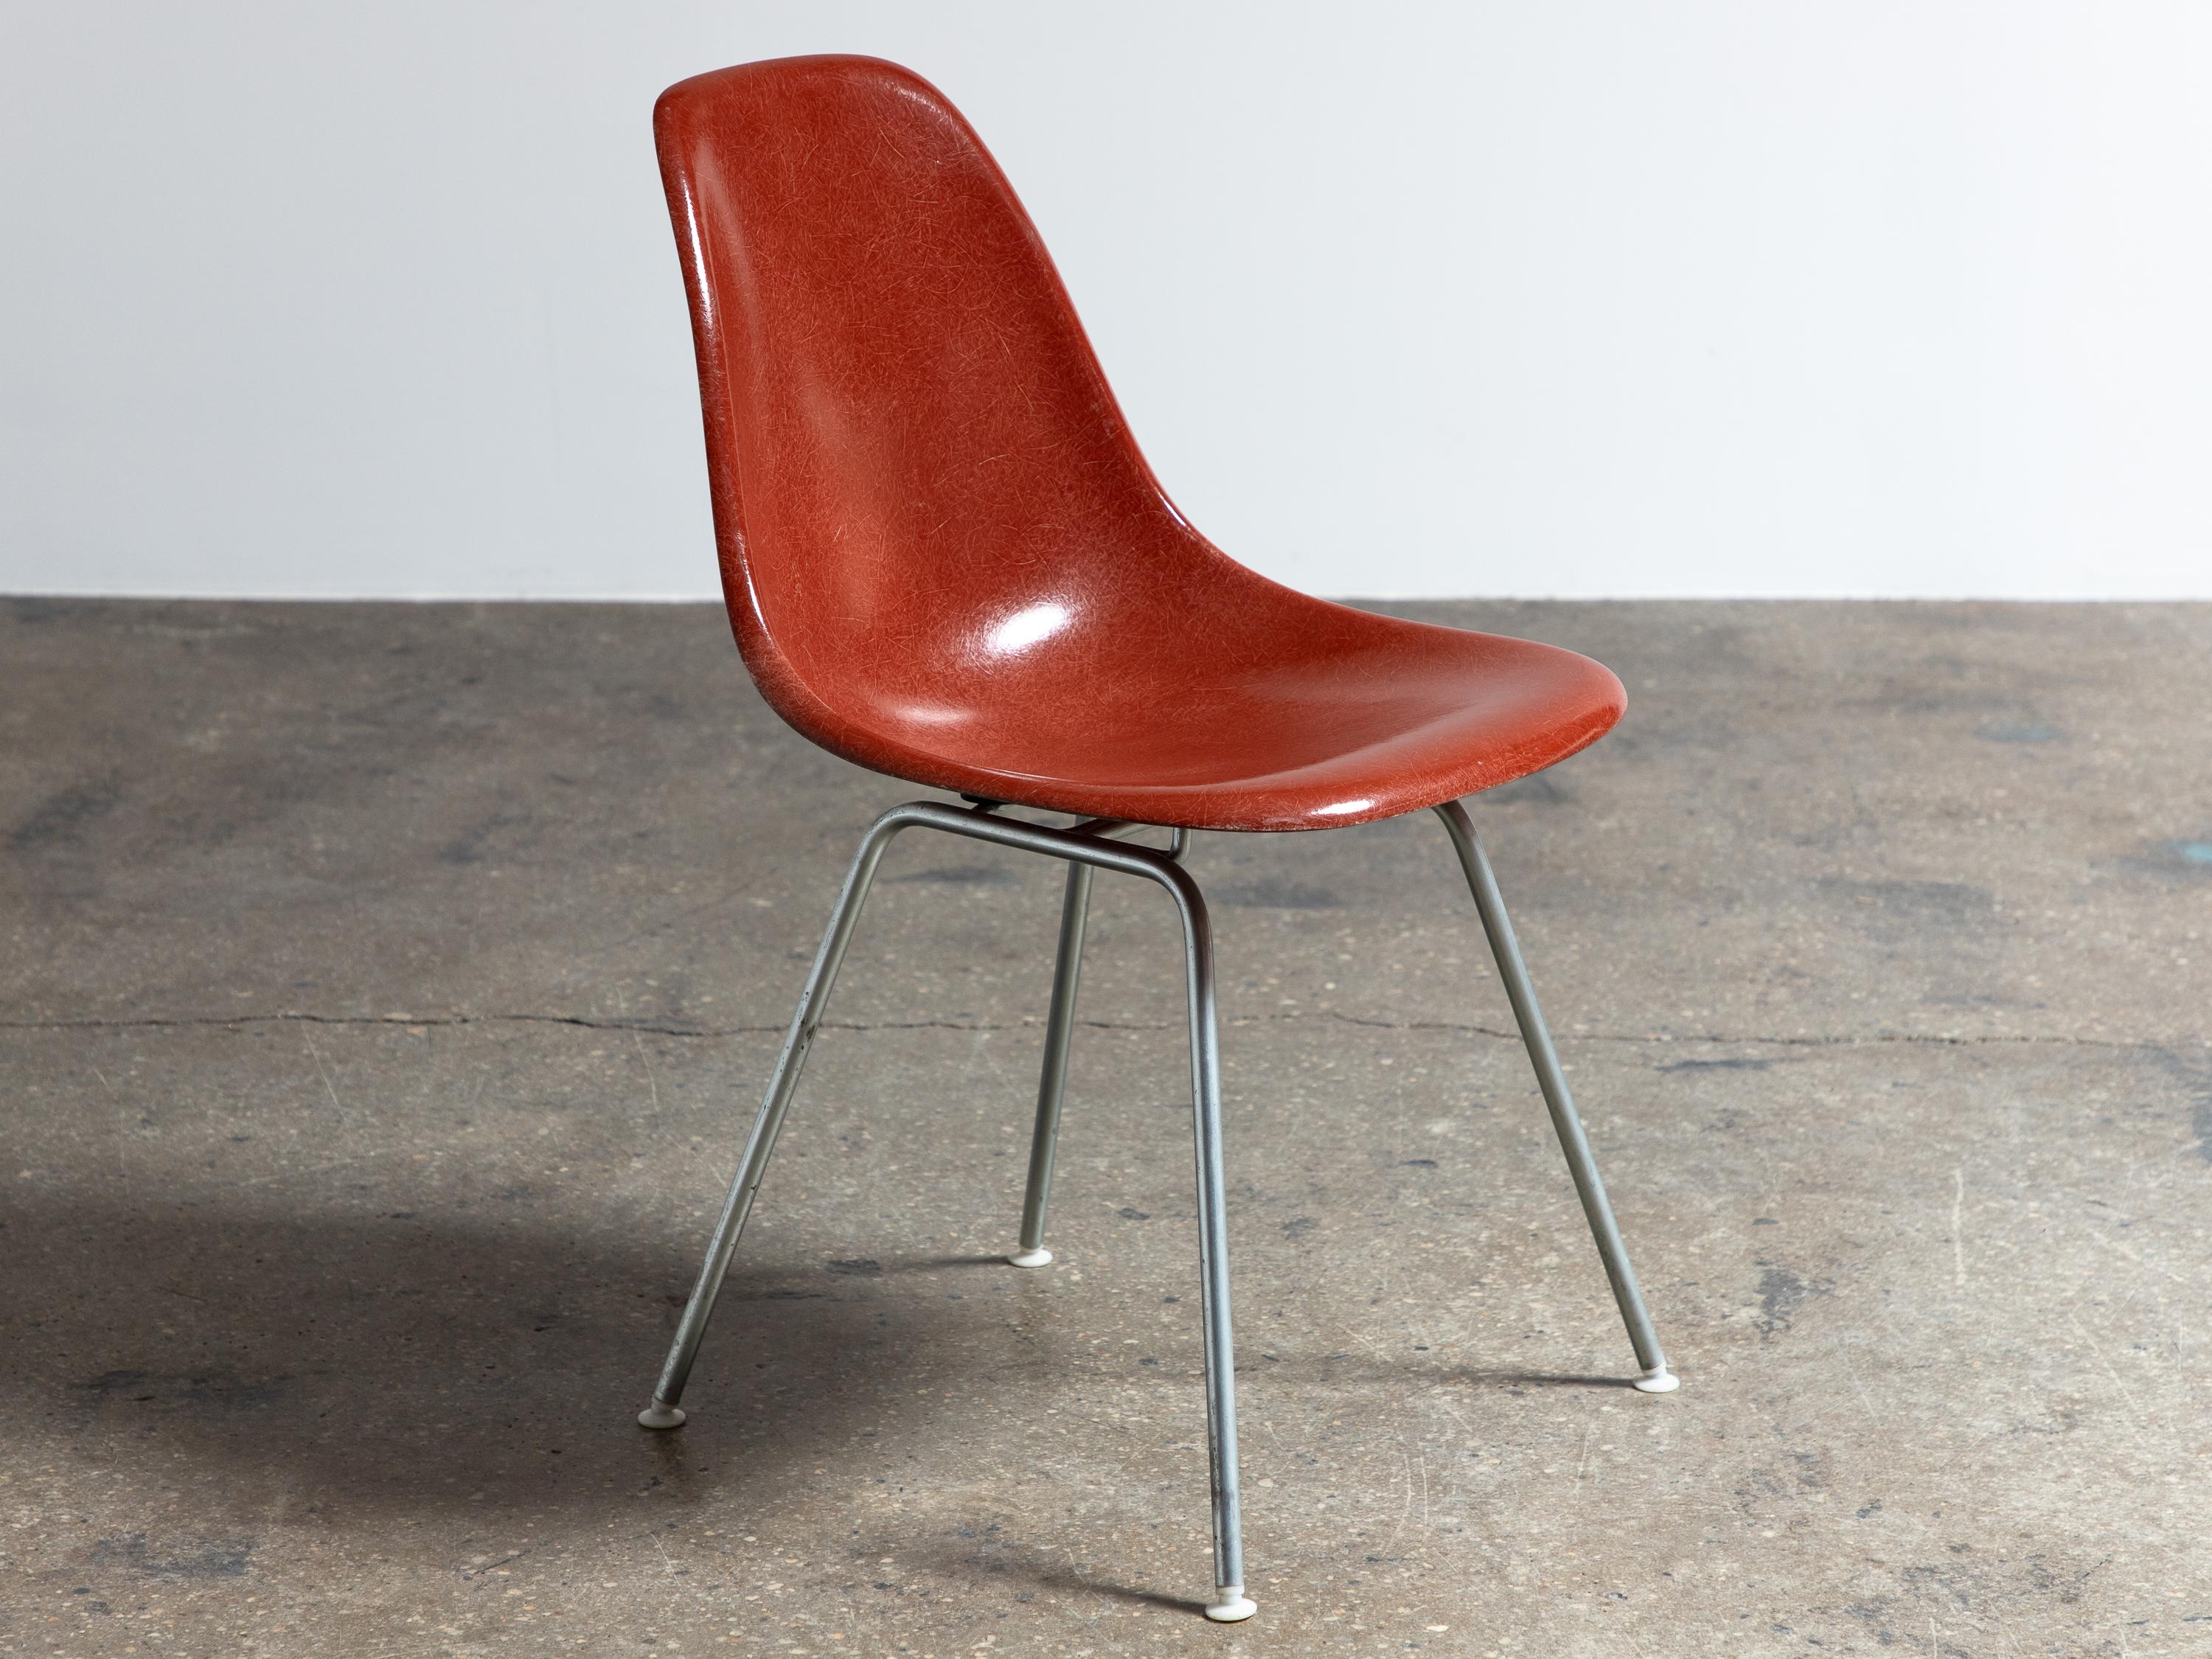 Multiple disponible. Chaise originale en fibre de verre moulée, conçue par Charles et Ray Eames pour Herman Miller. Les chaises vintage à coque sont appréciées pour leur patine attrayante, la texture distincte des fils et la belle profondeur des